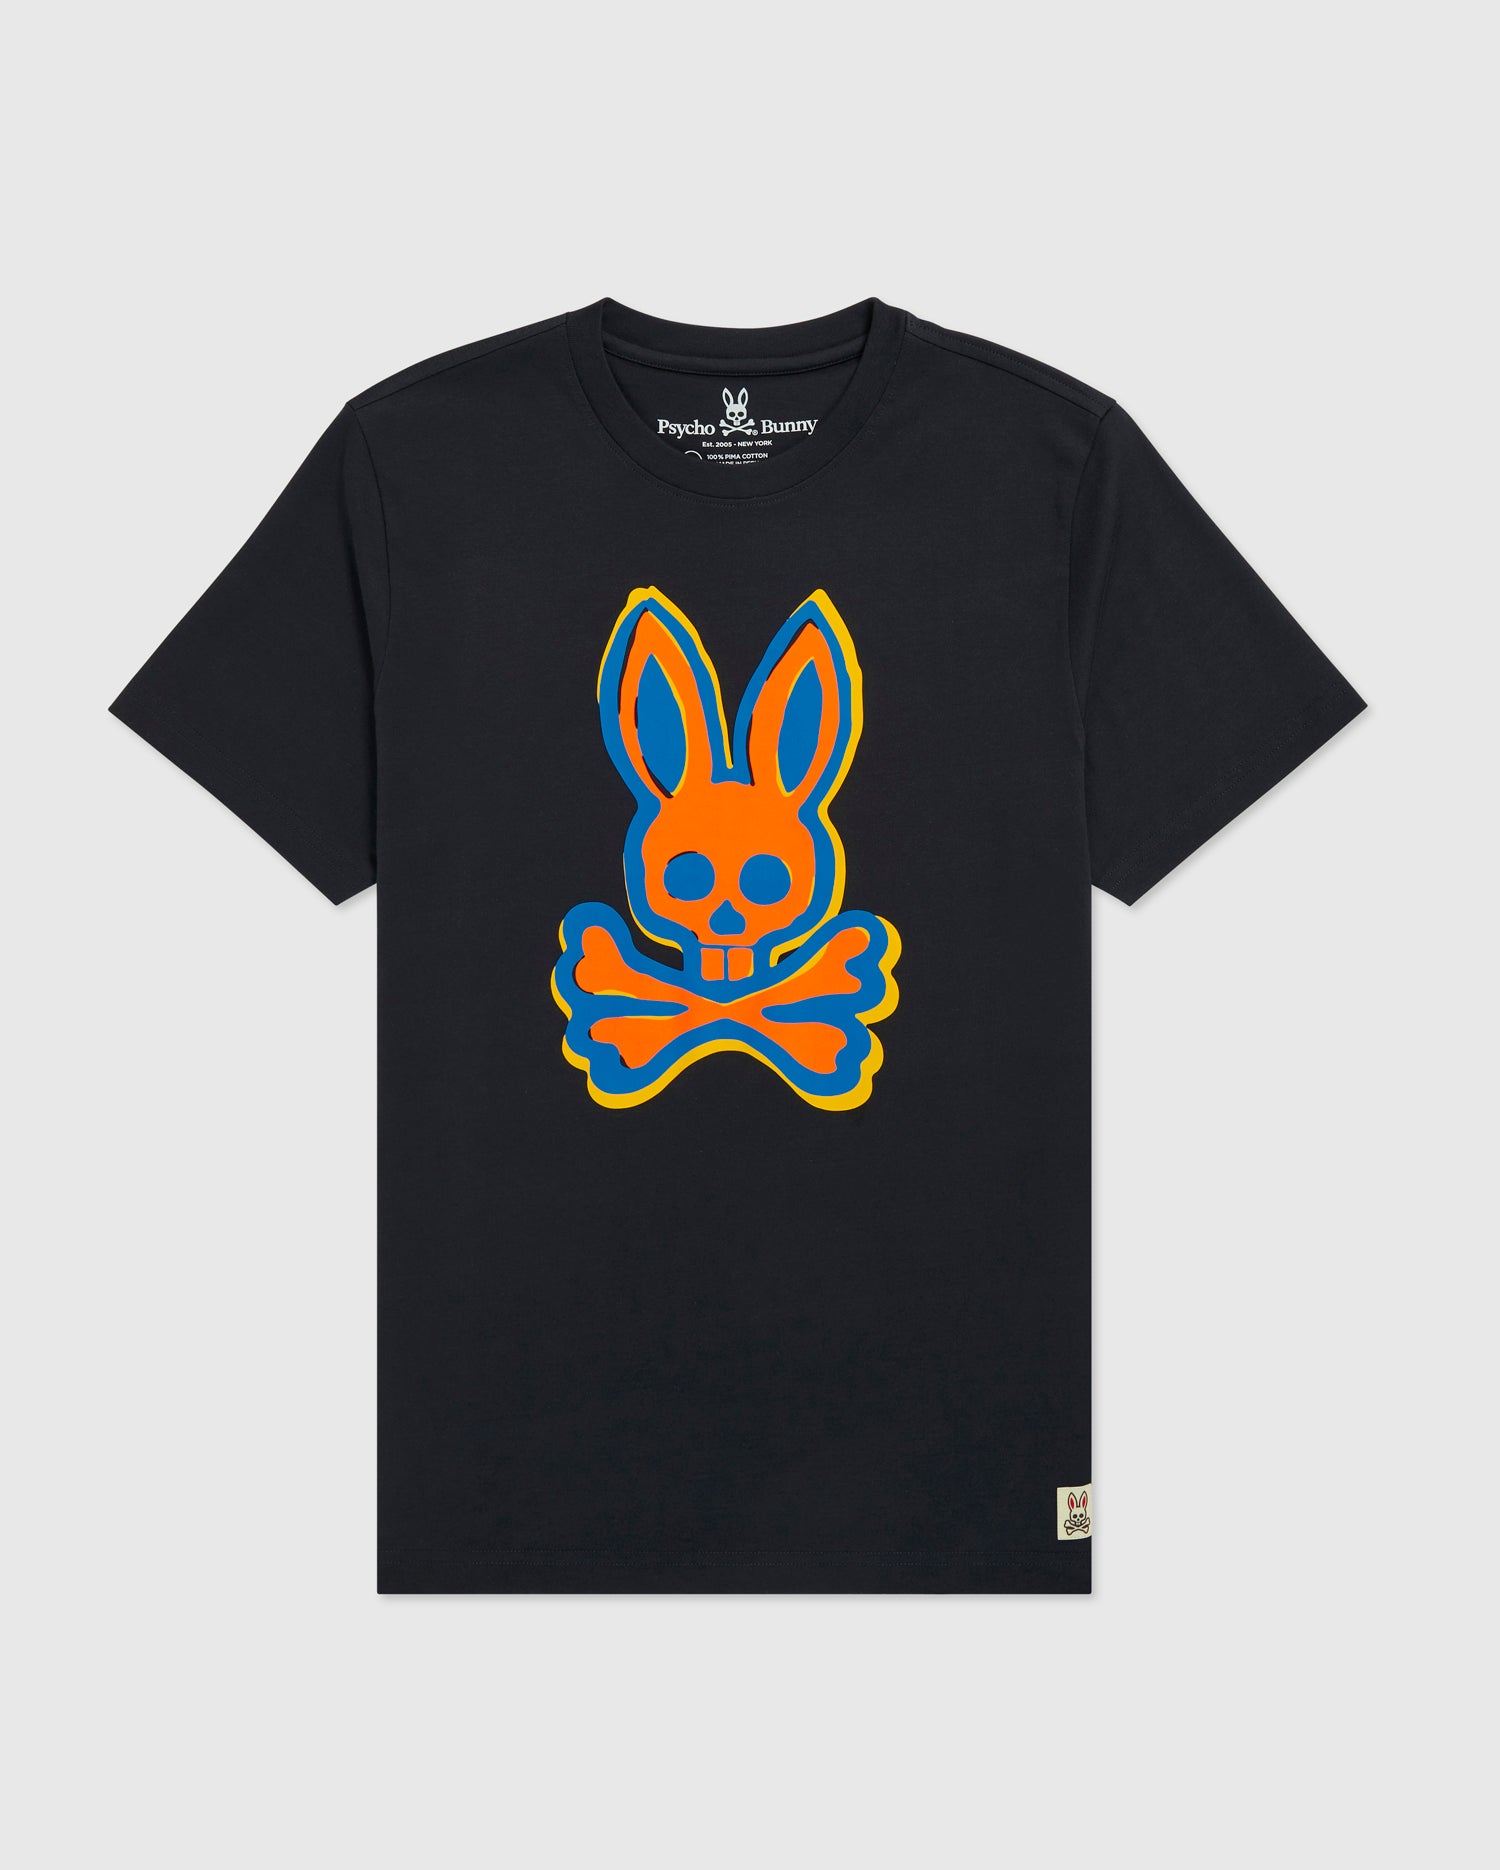 psycho bunny navy big & tall tee shirt